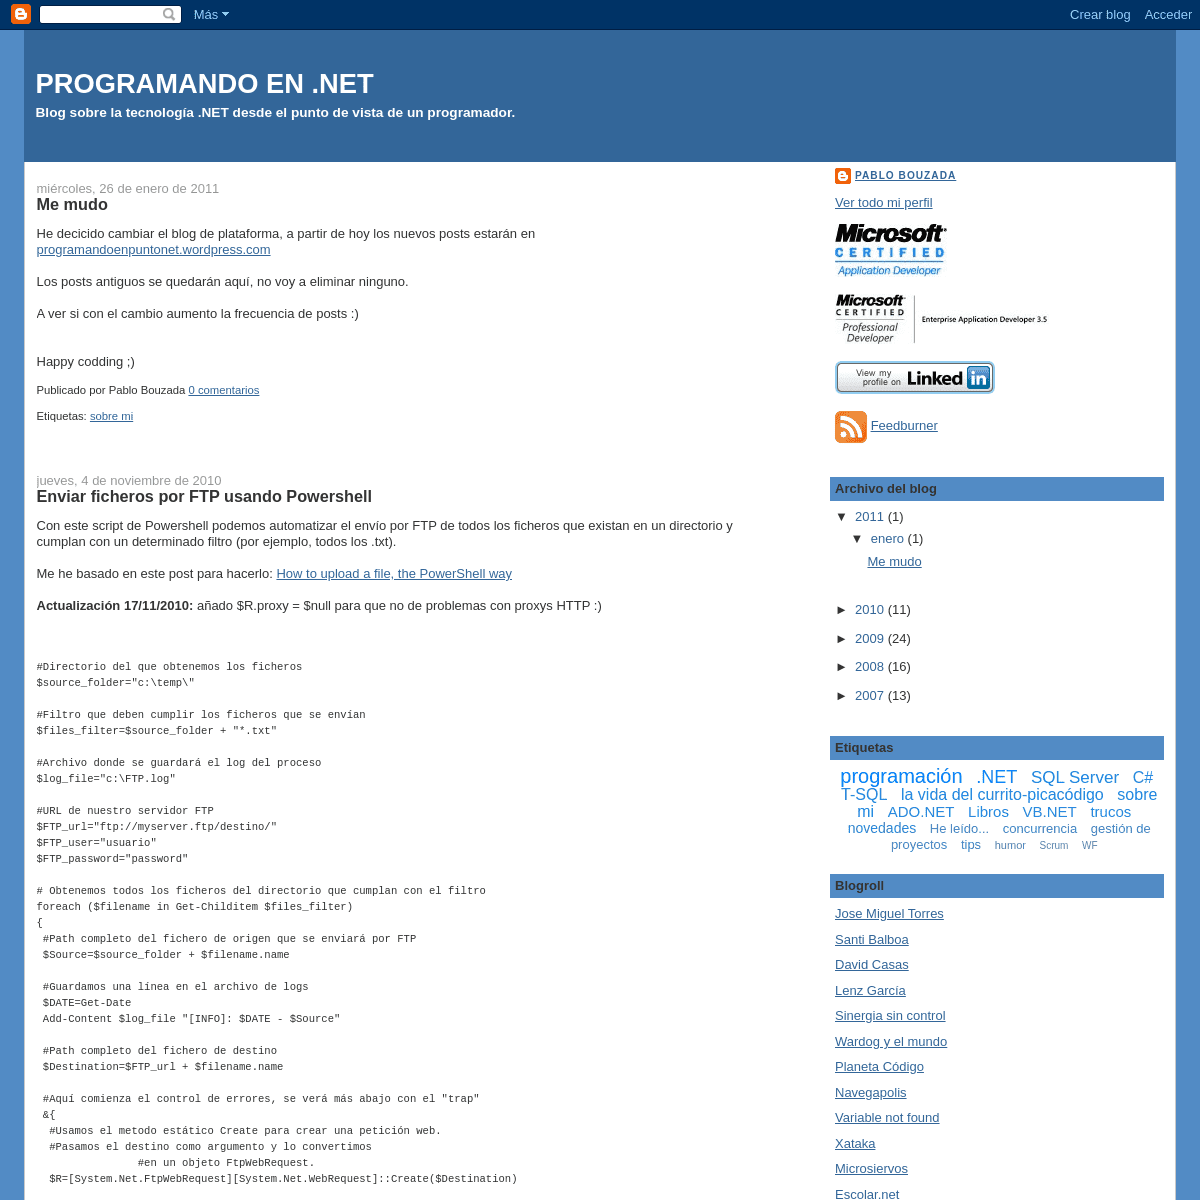 A complete backup of programandoenpuntonet.blogspot.com